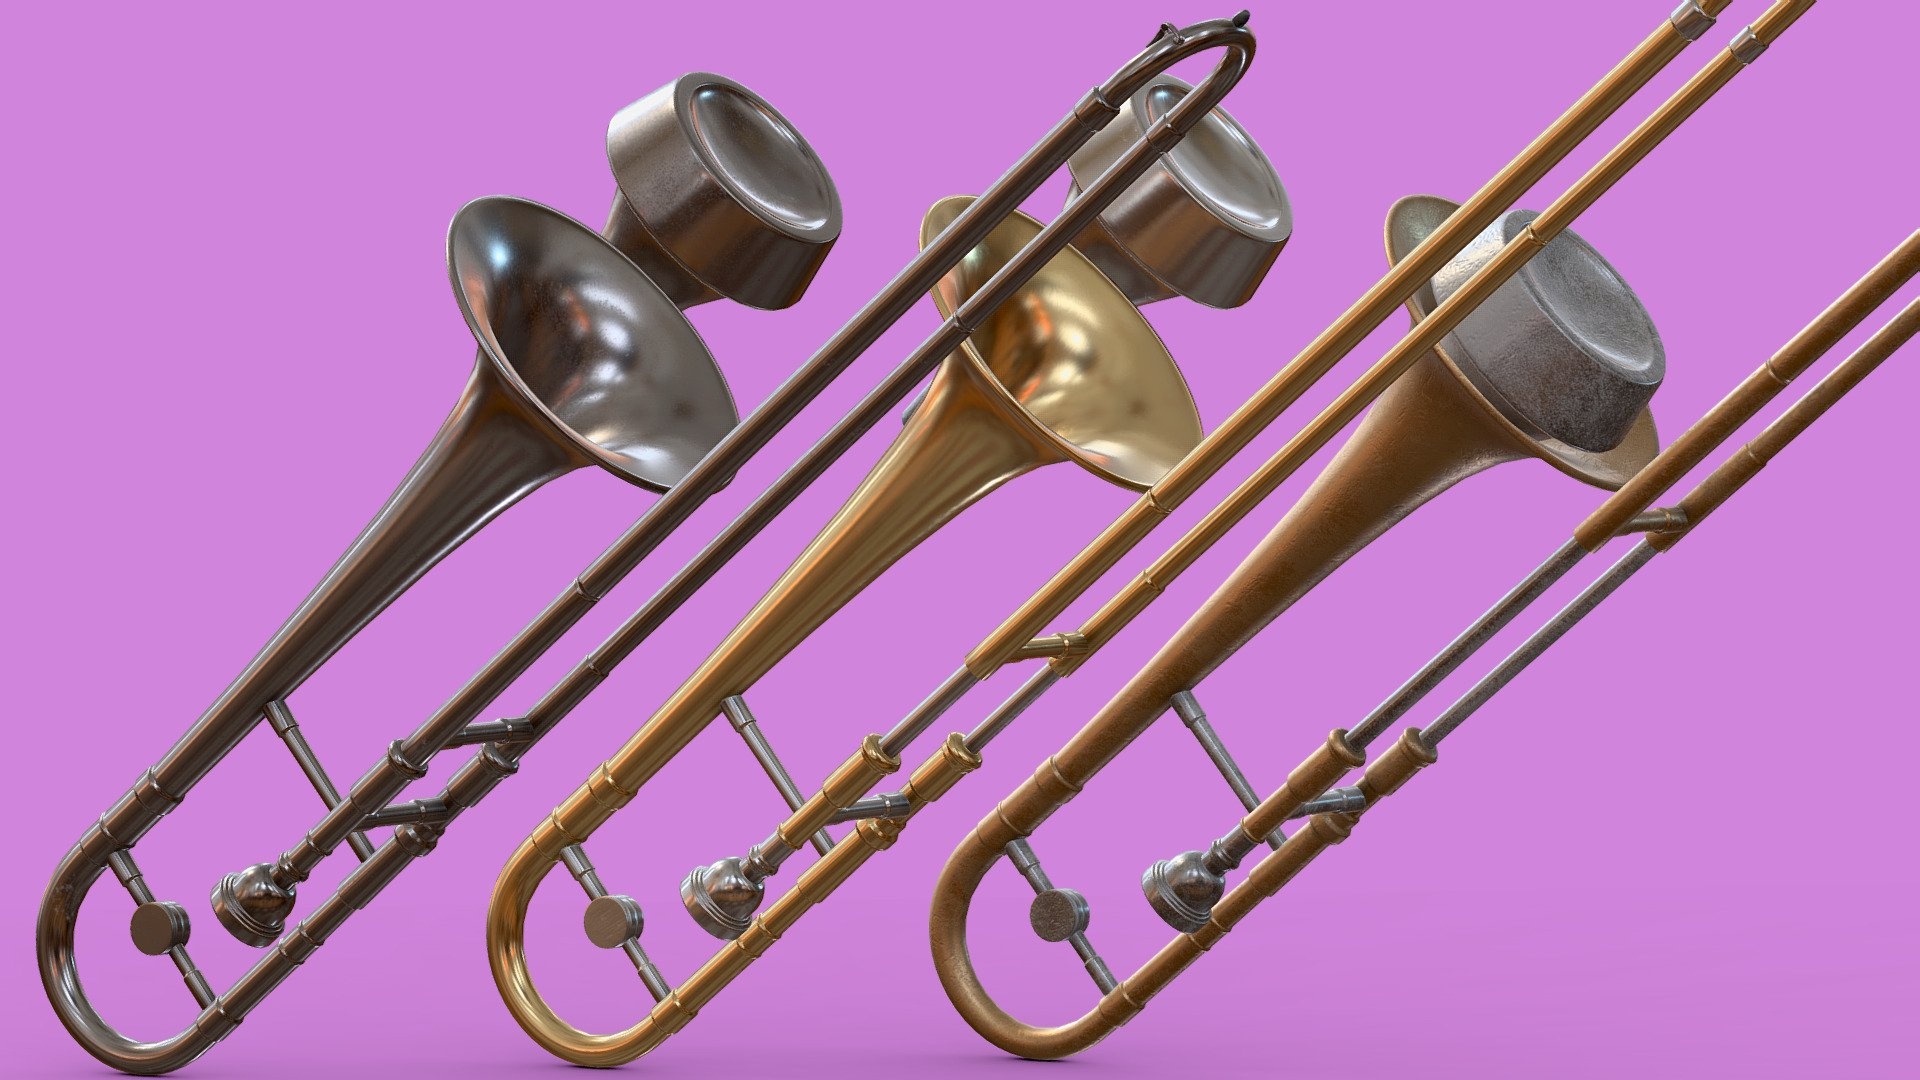 Trombone brass instrument, Royalty-free 3D model, Maddhatt at Maddhatt, Instrumental artistry, 1920x1080 Full HD Desktop